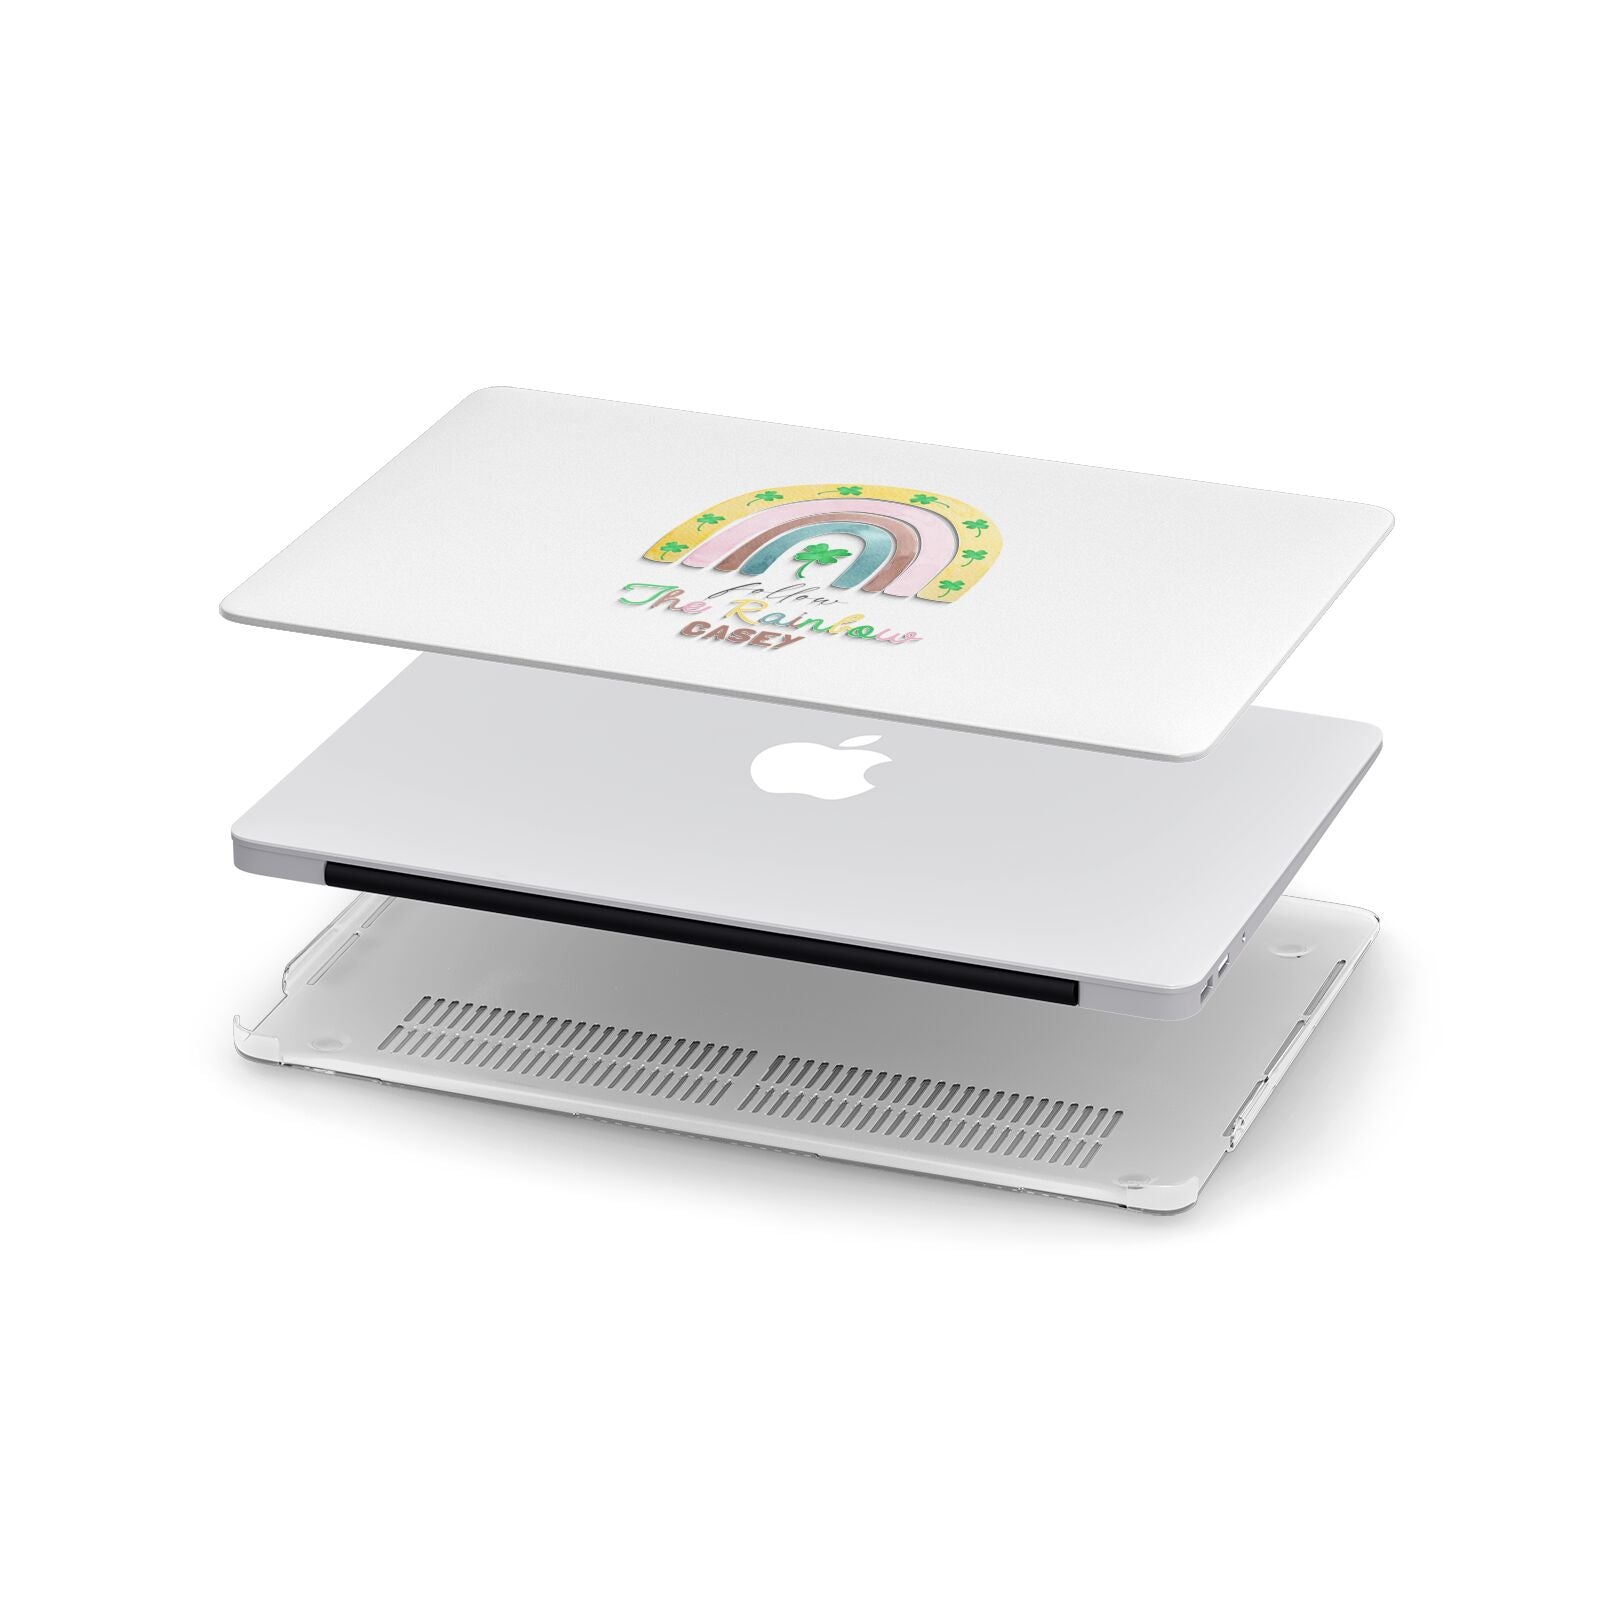 Personalised Rainbow Shamrock Apple MacBook Case in Detail